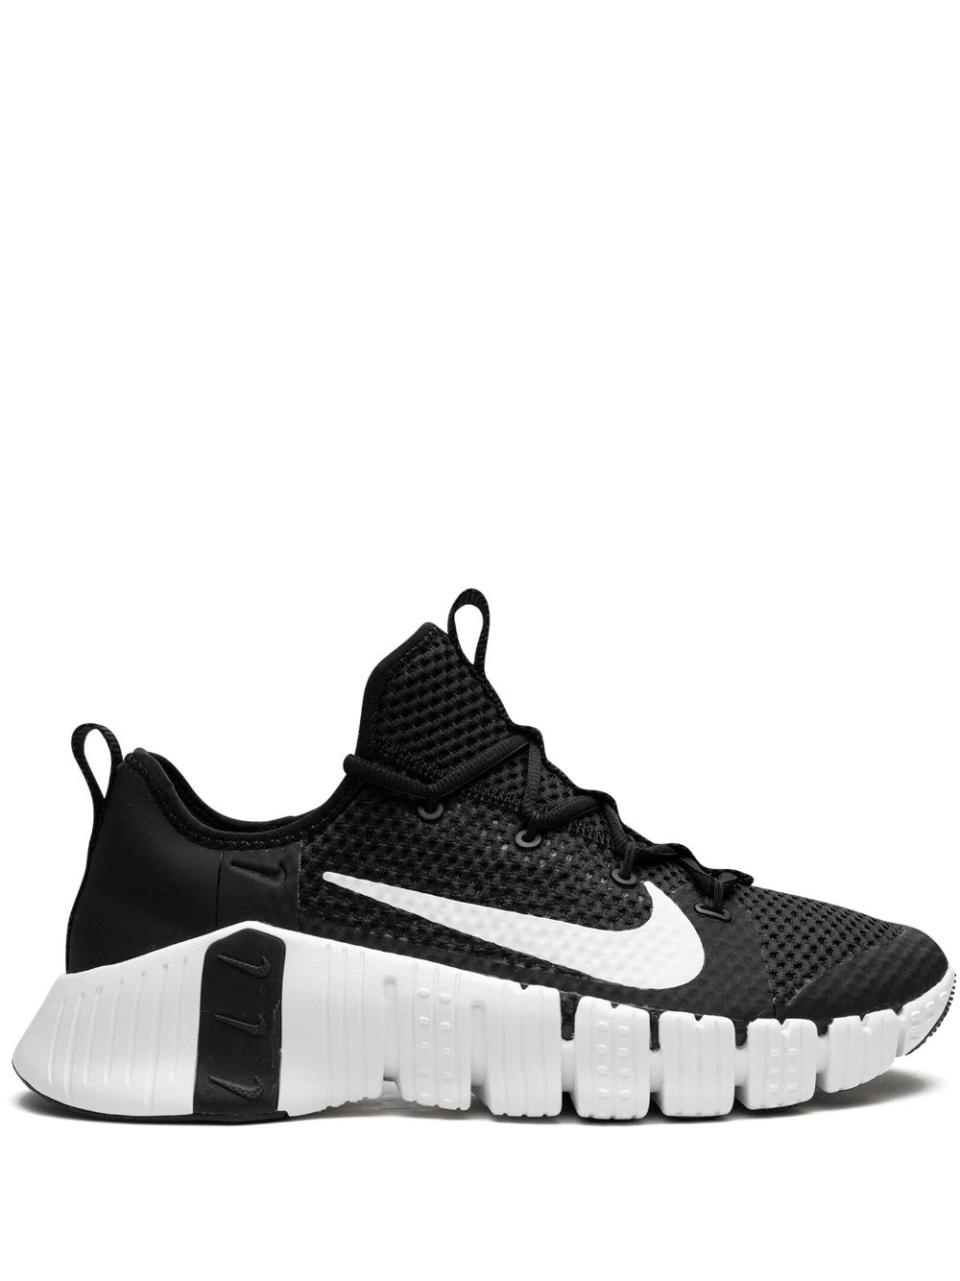 Free Metcon 3 "black/white" Sneakers